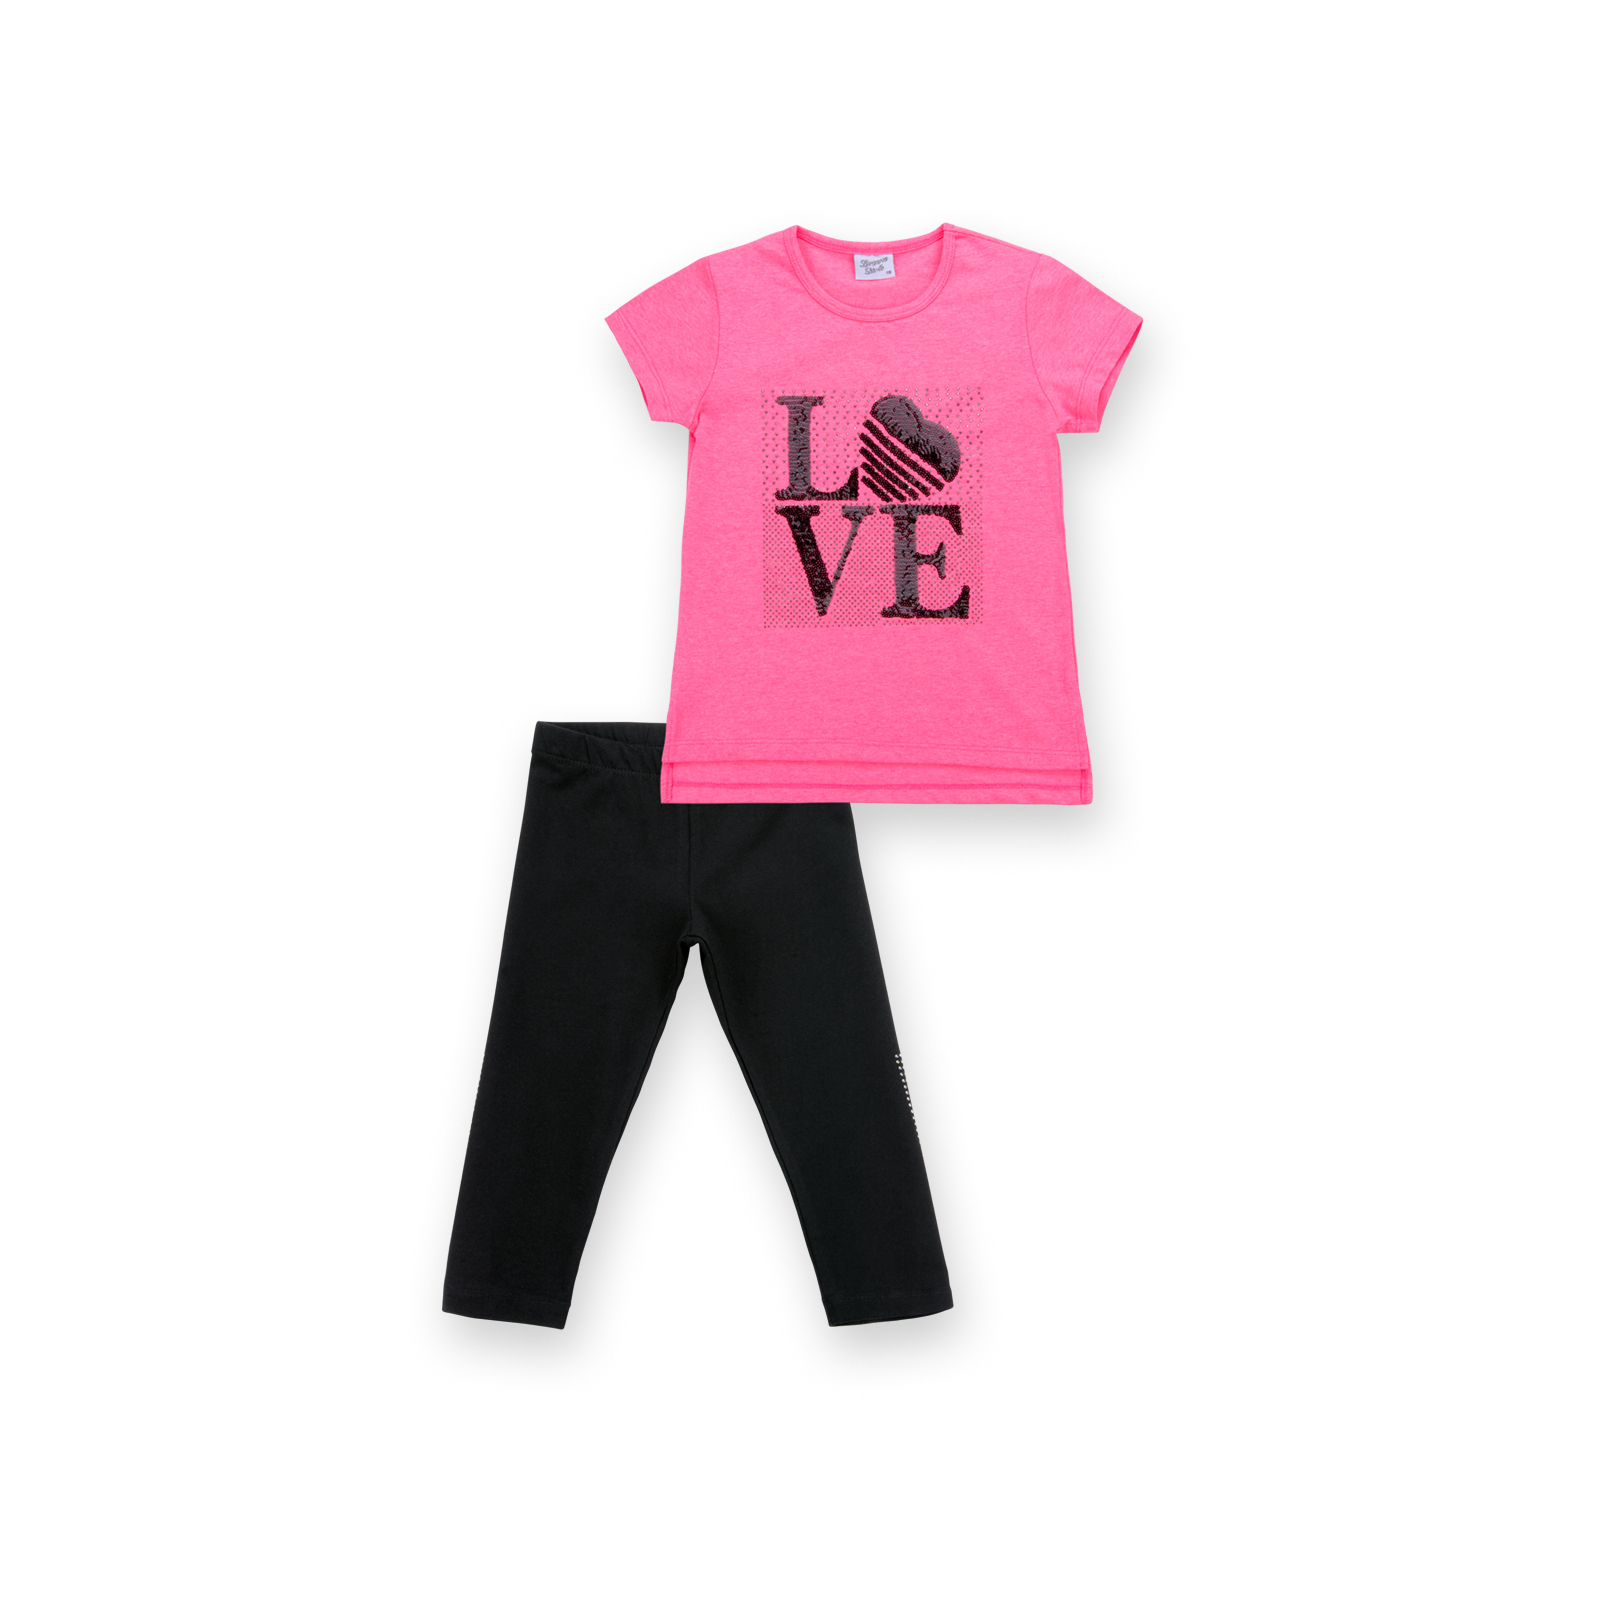 Набор детской одежды Breeze с надписью "LOVE" из пайеток (8307-116G-pink)